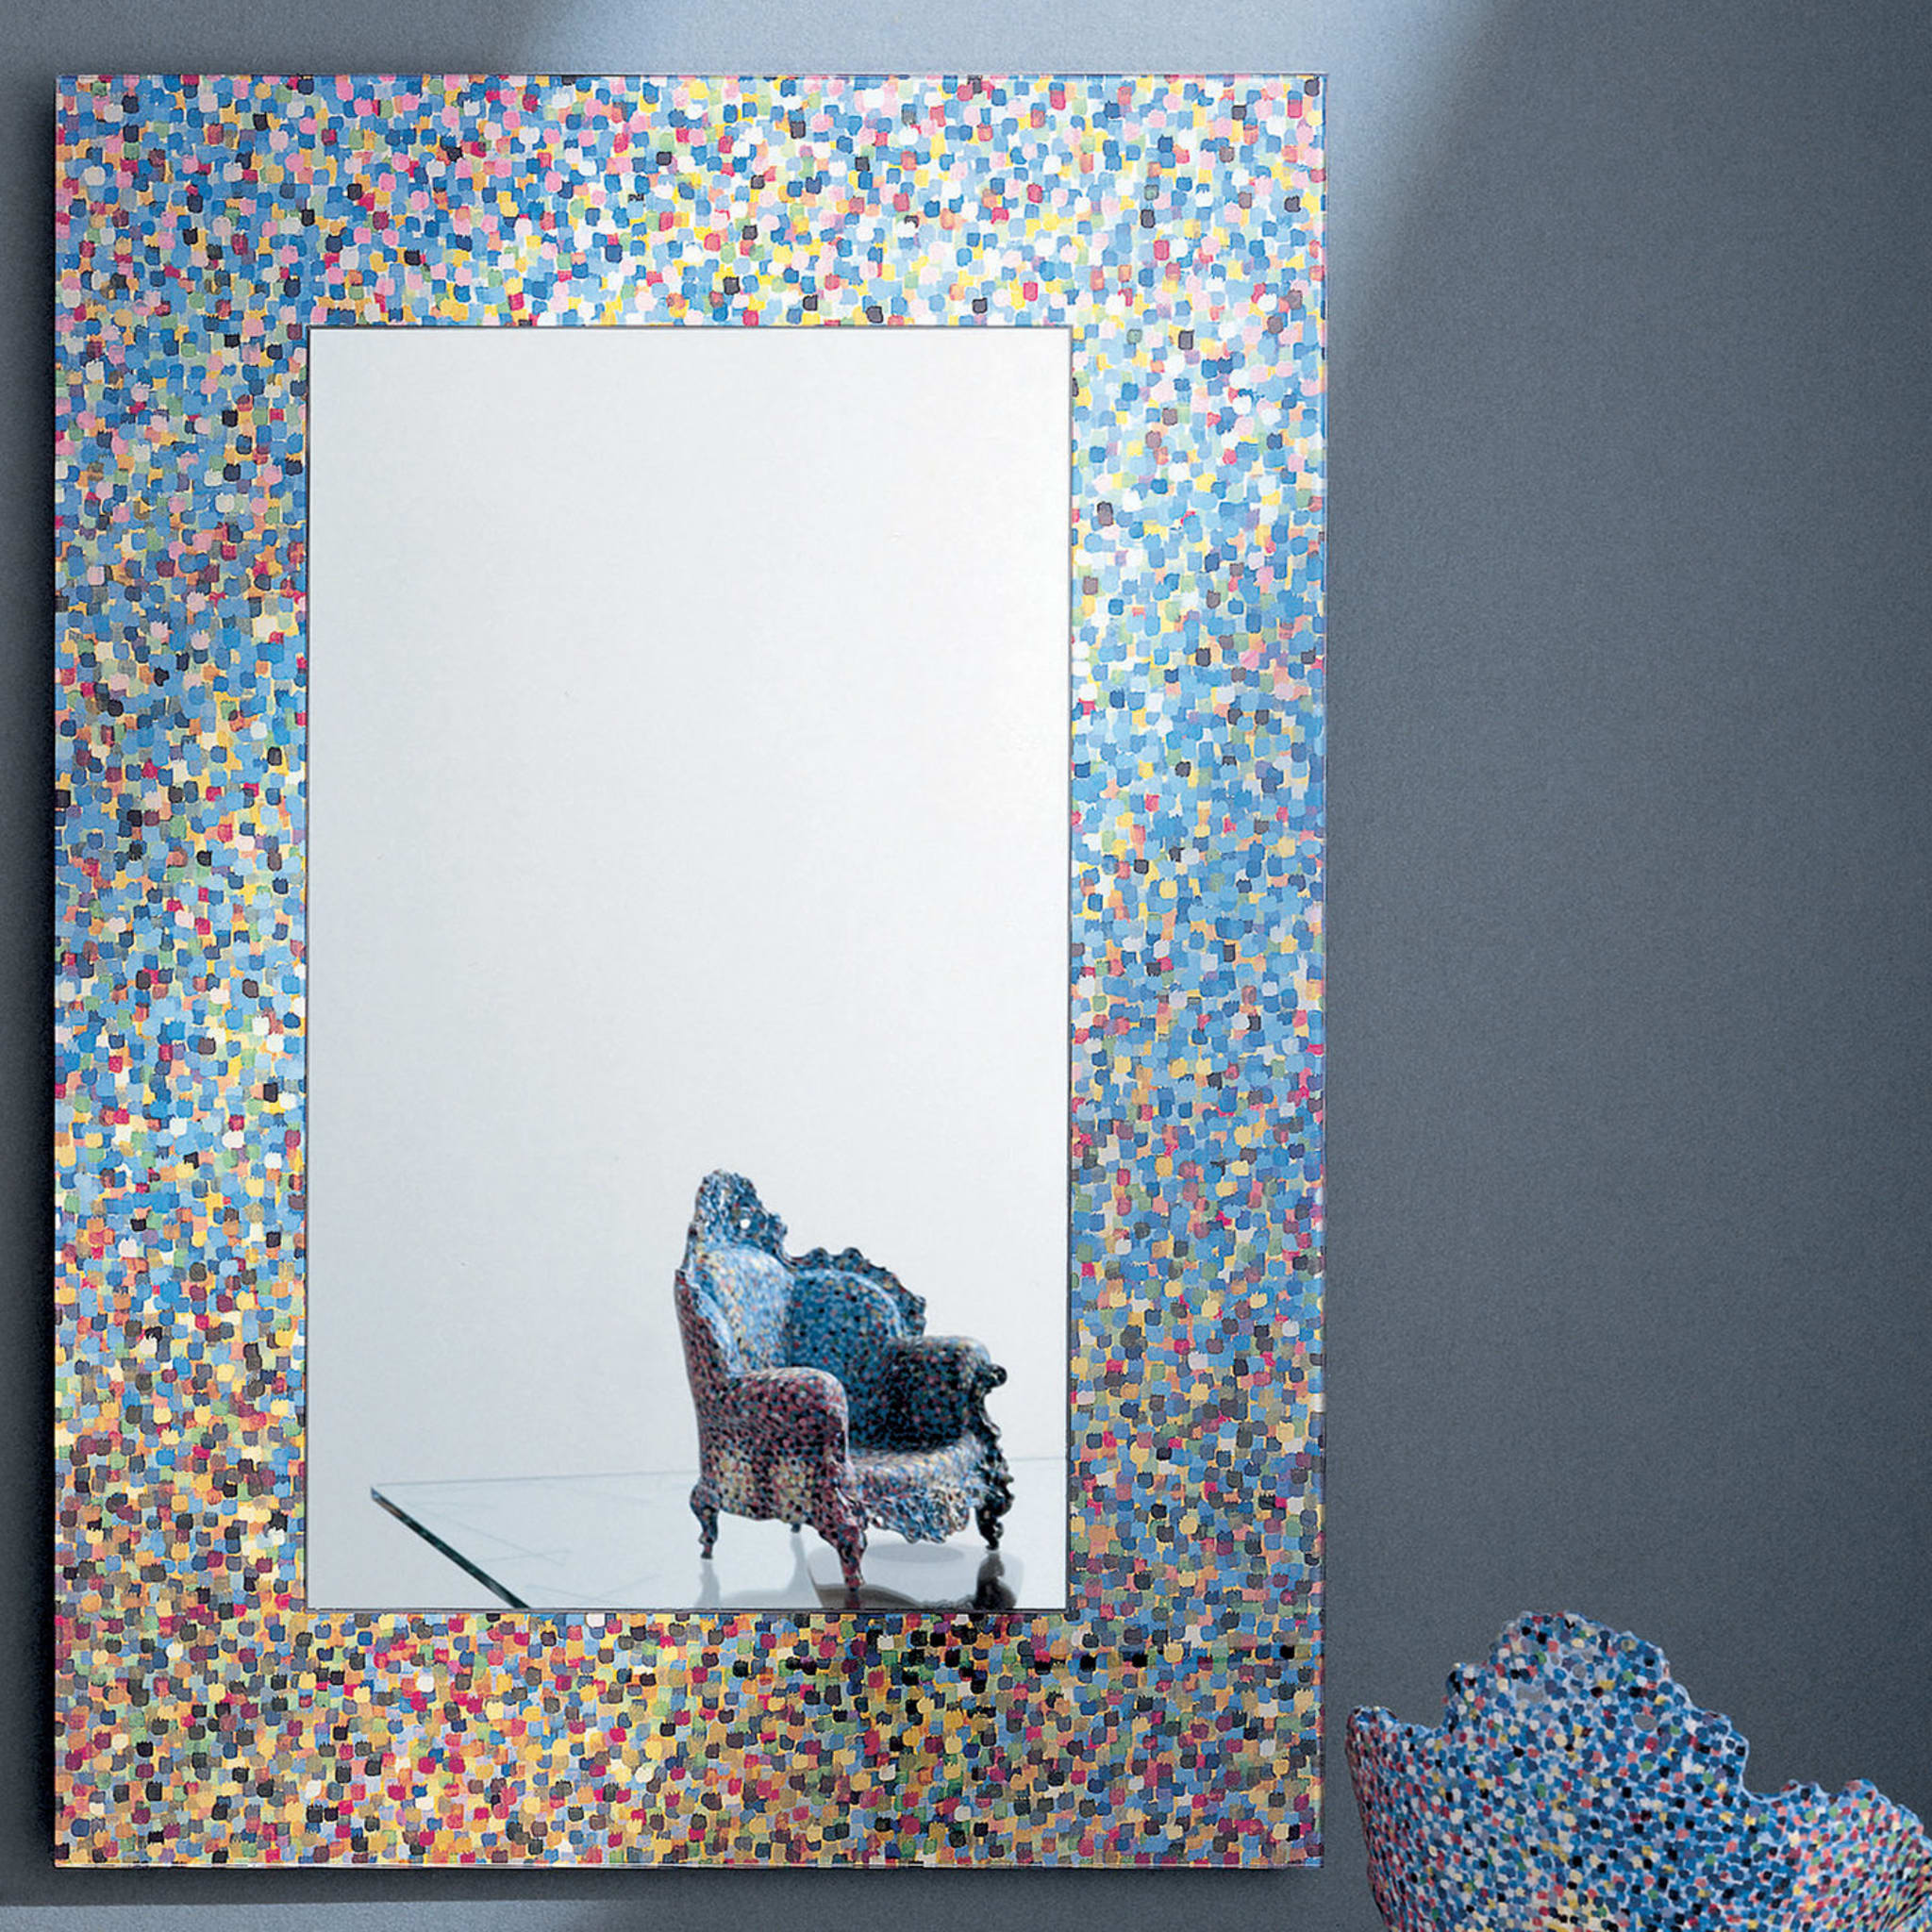 Specchio di Proust Mirror by Alessandro Mendini - Alternative view 2